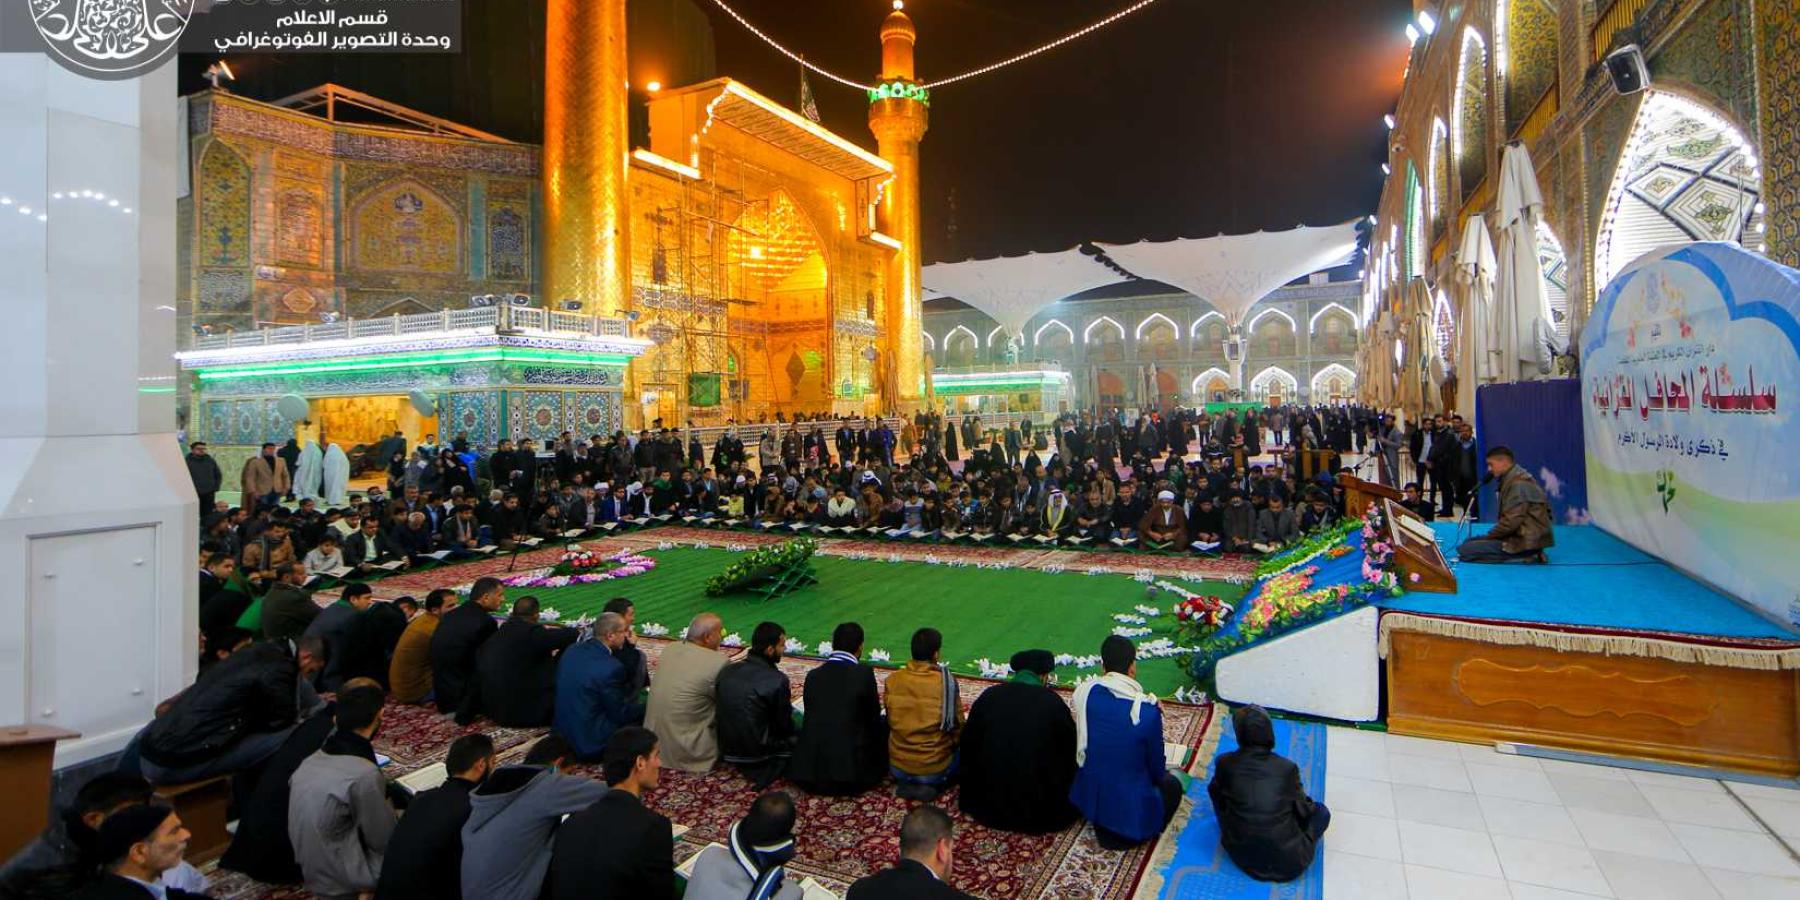   تنظيم محفل قرآني في رحاب الصحن الحيدري الشريف لأكثر من (400) أستاذ قرآني من سبع محافظات.